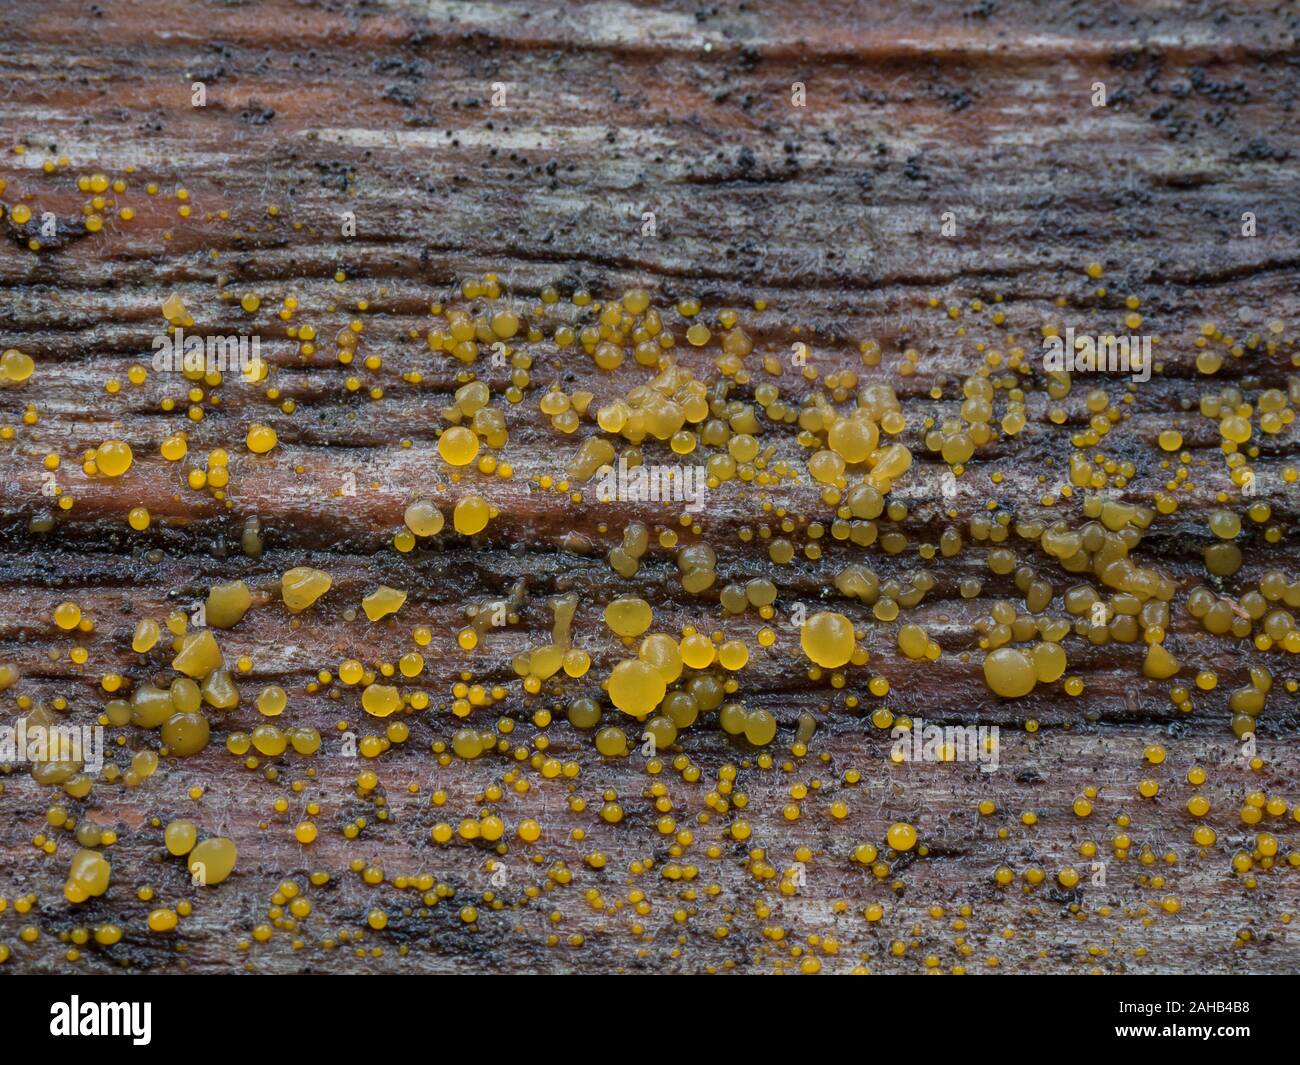 Dacrymyces stillatus, Common Jellyspot fungus, growing in Görvälns naturreservat, Sweden. Stock Photo